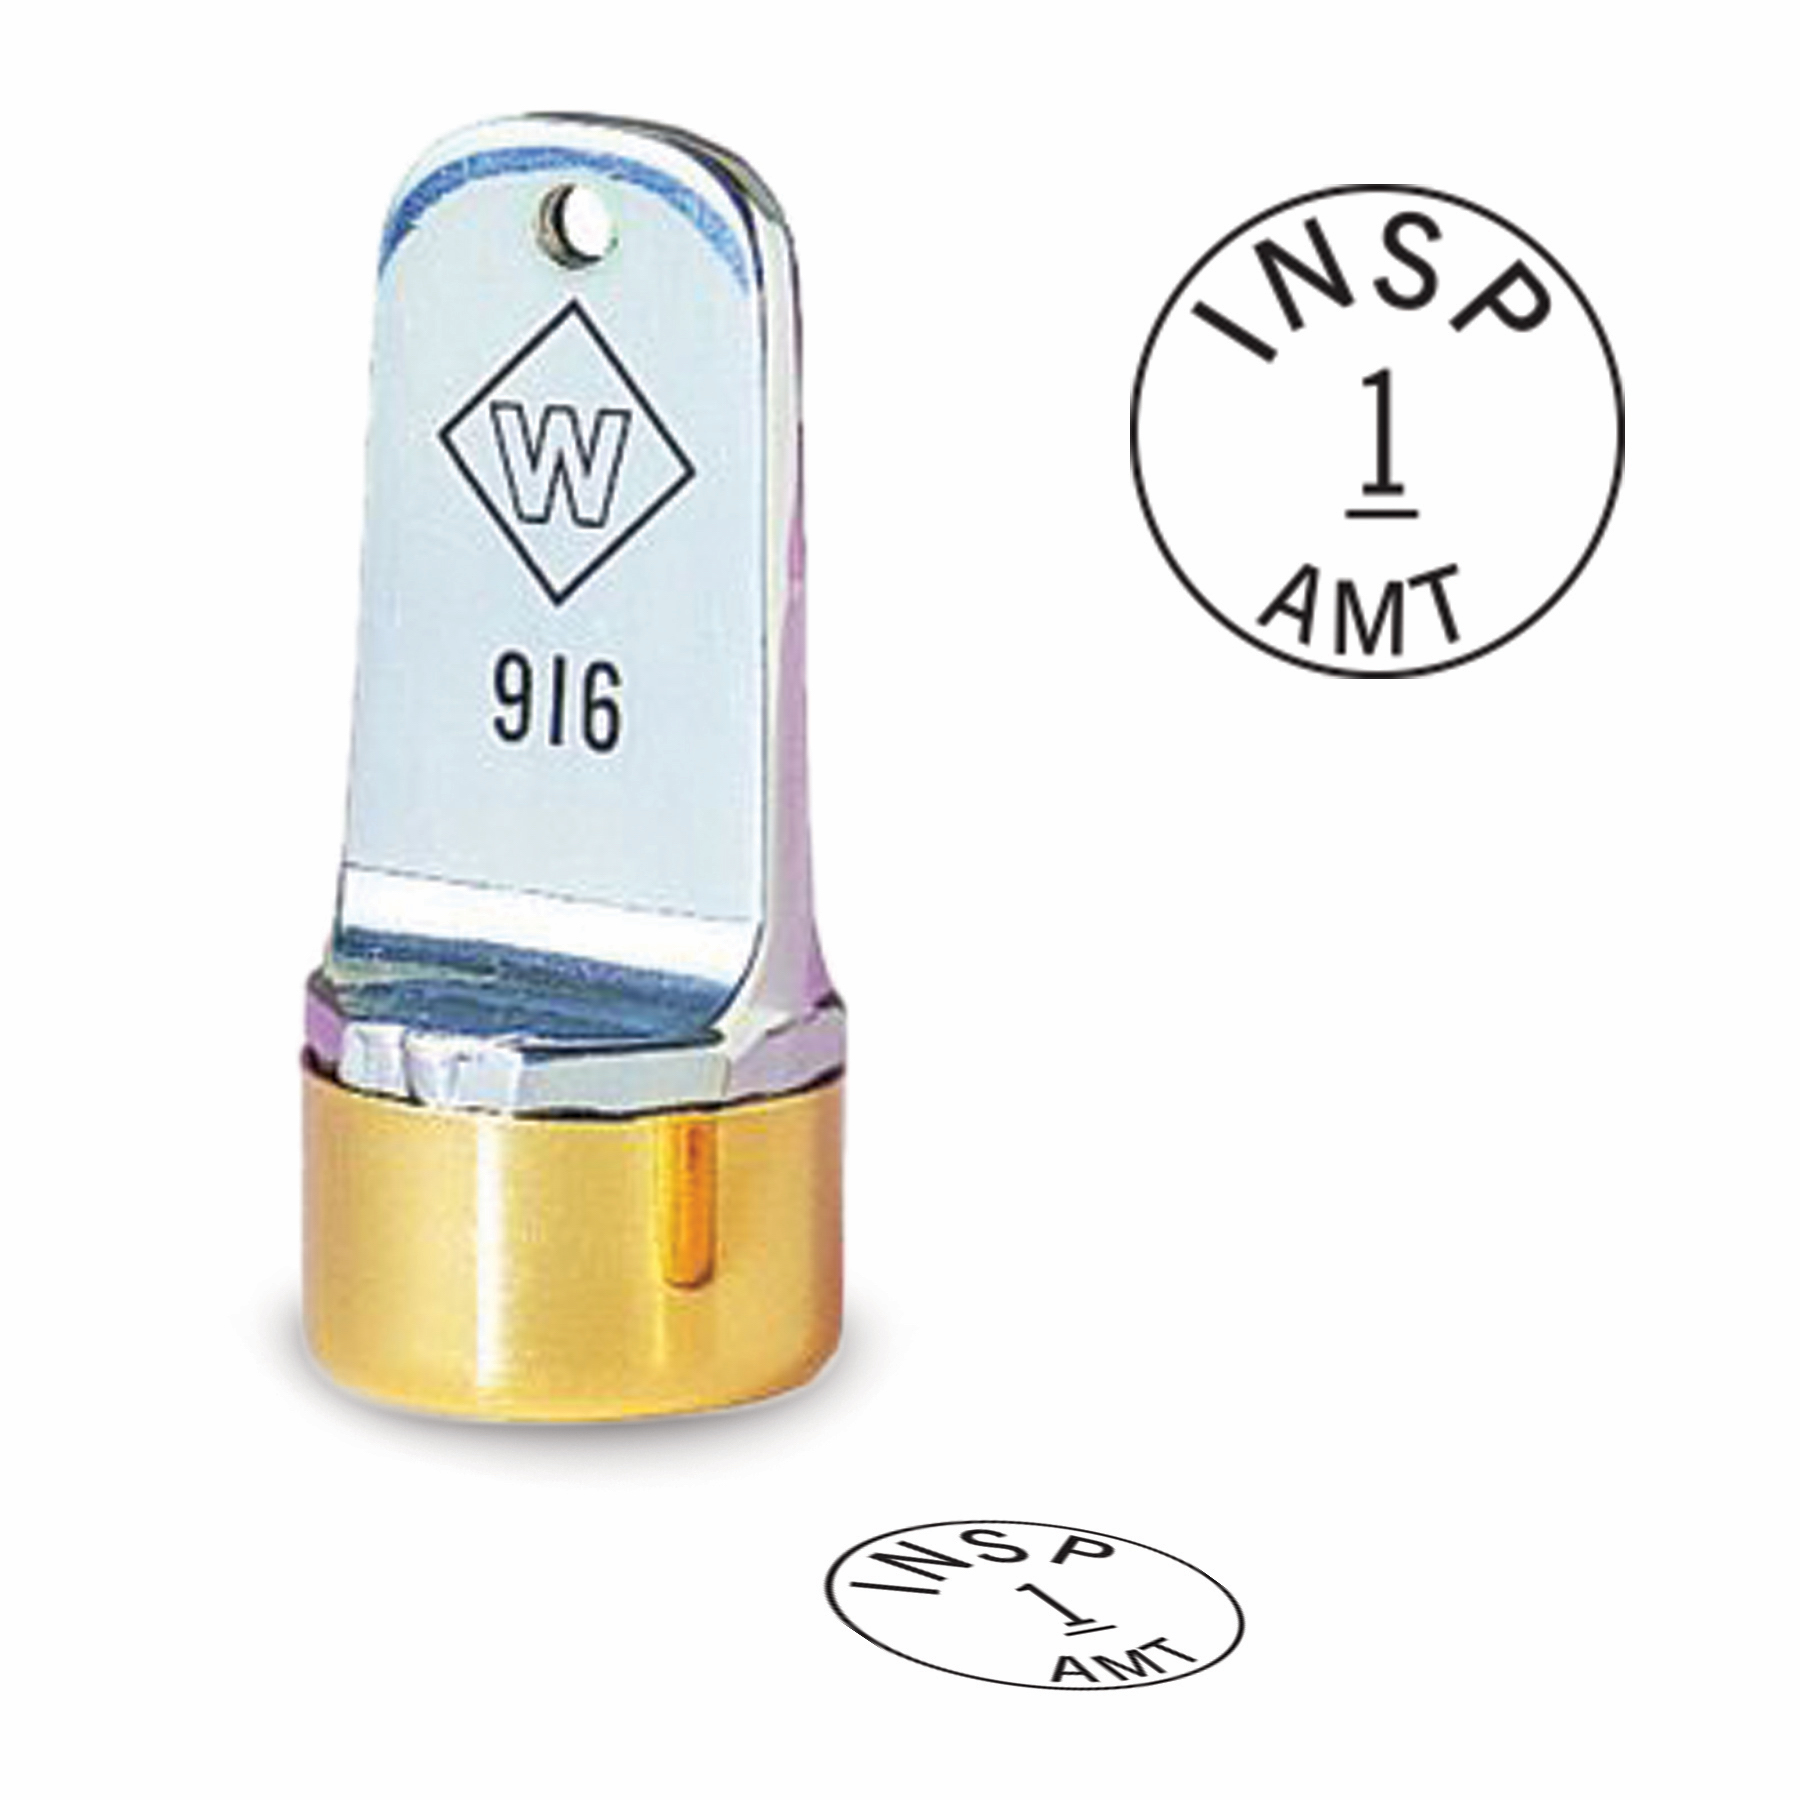 Buy 1/2 Diameter Custom Metal Inspection Stamp Online Today!